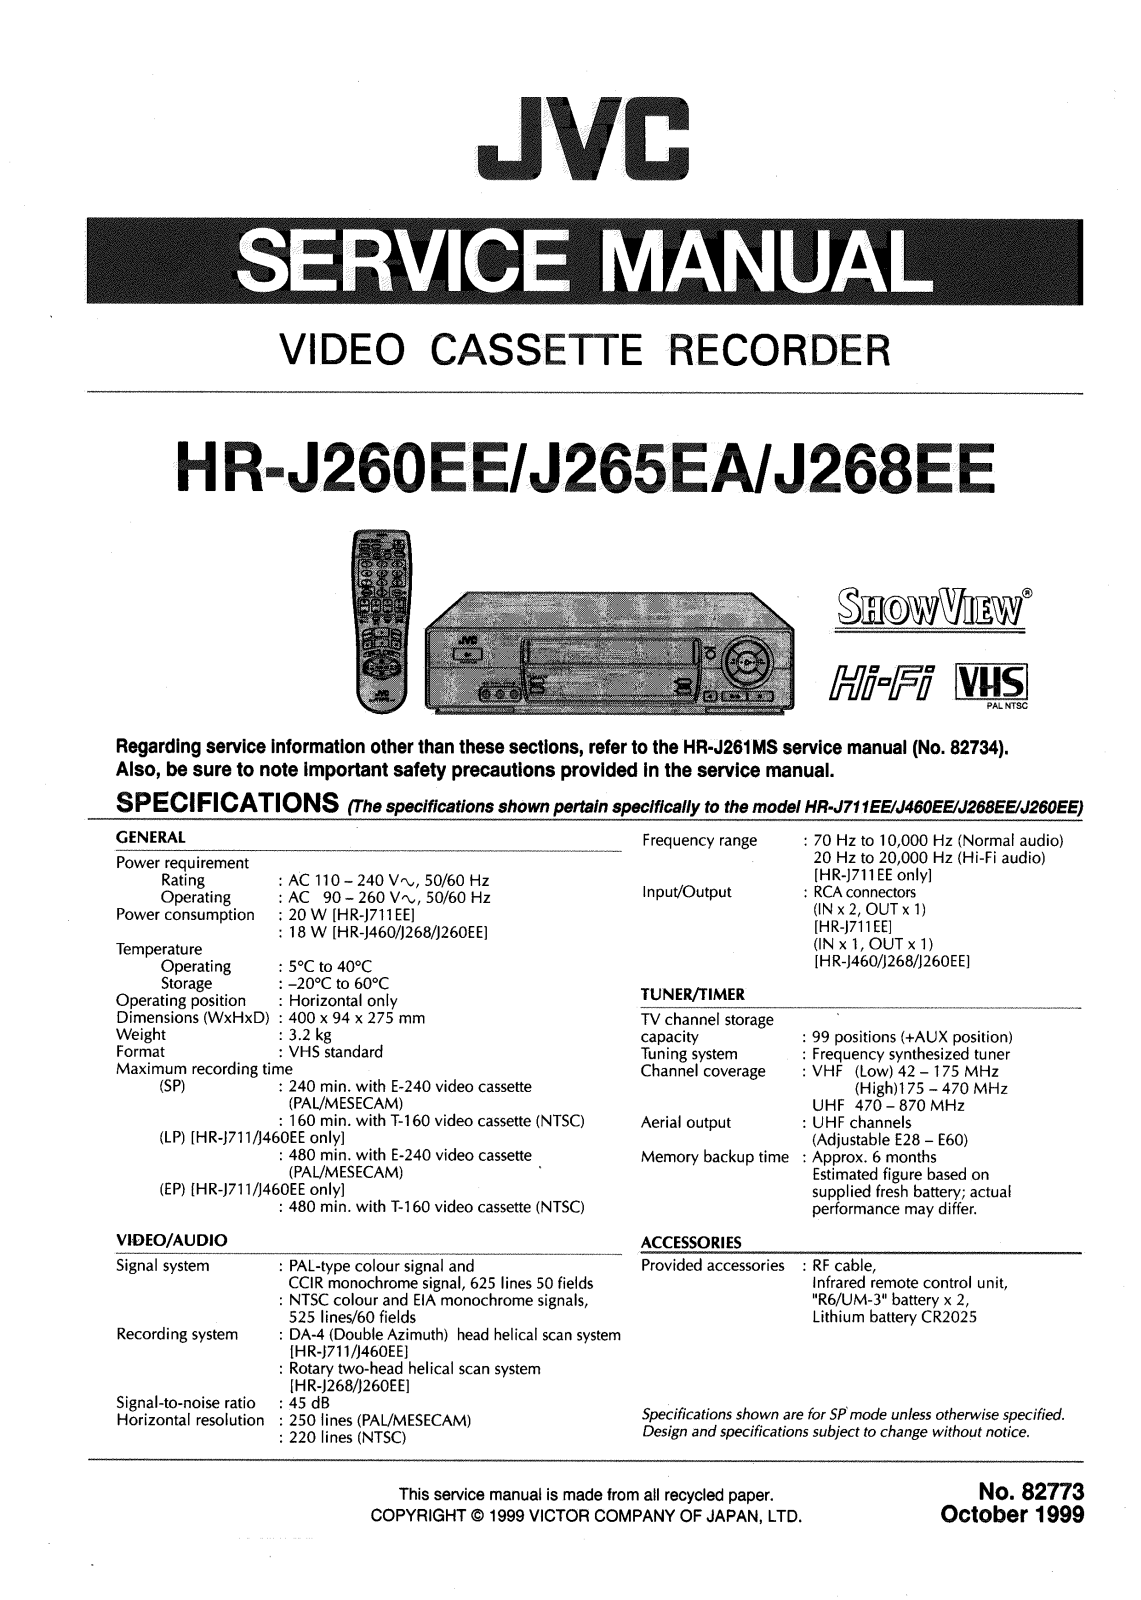 JVC HRJ-260-EE, HRJ-268-EE, HRJ-265-EA Service manual